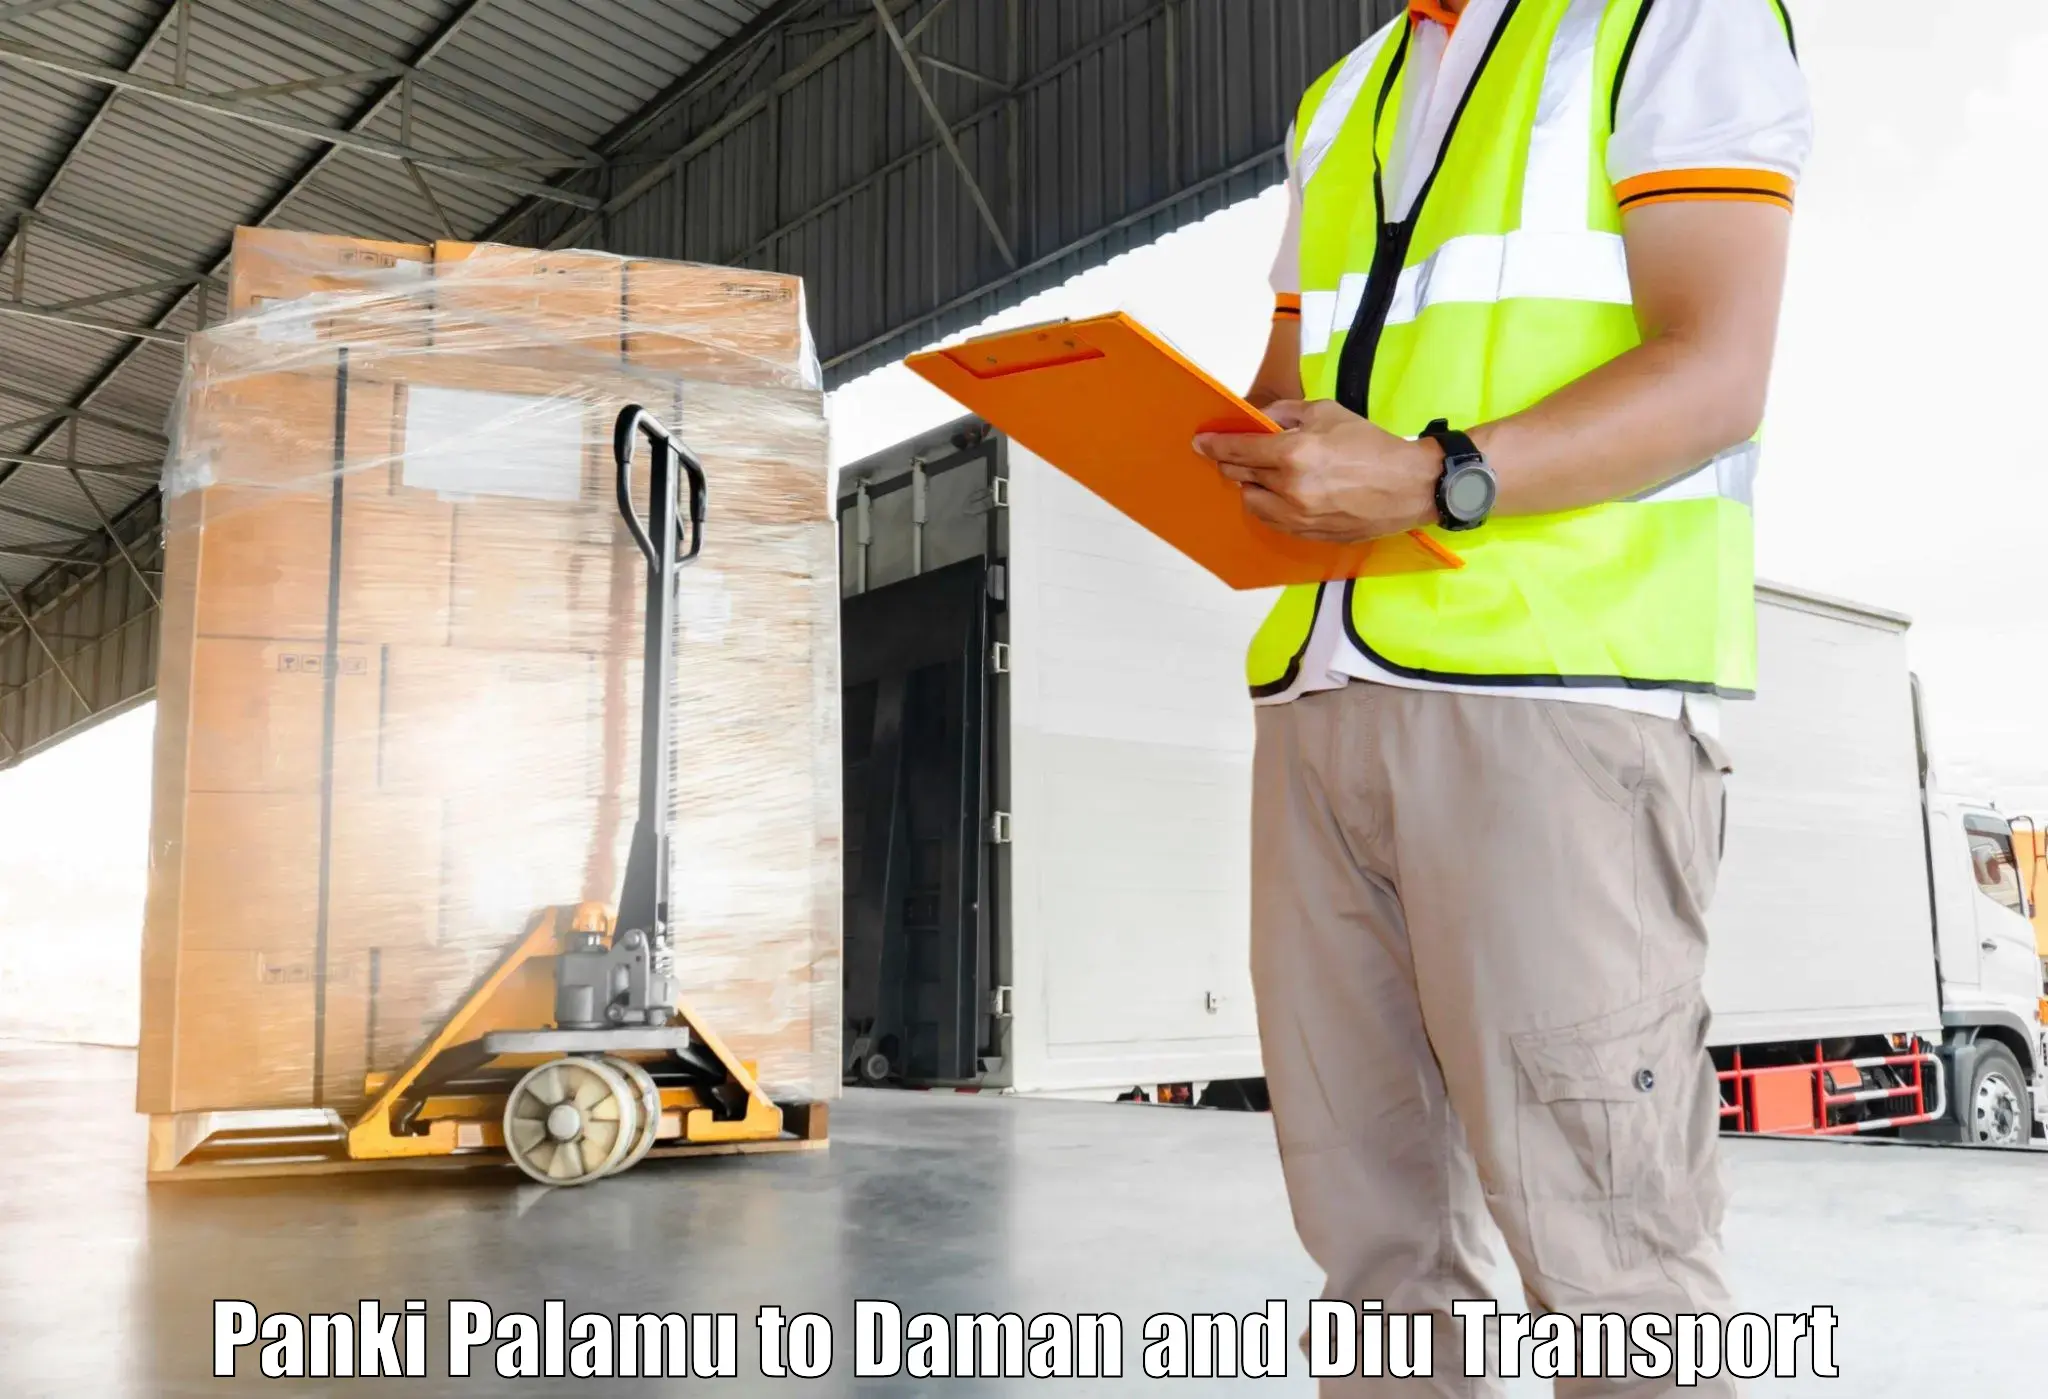 Container transport service Panki Palamu to Daman and Diu